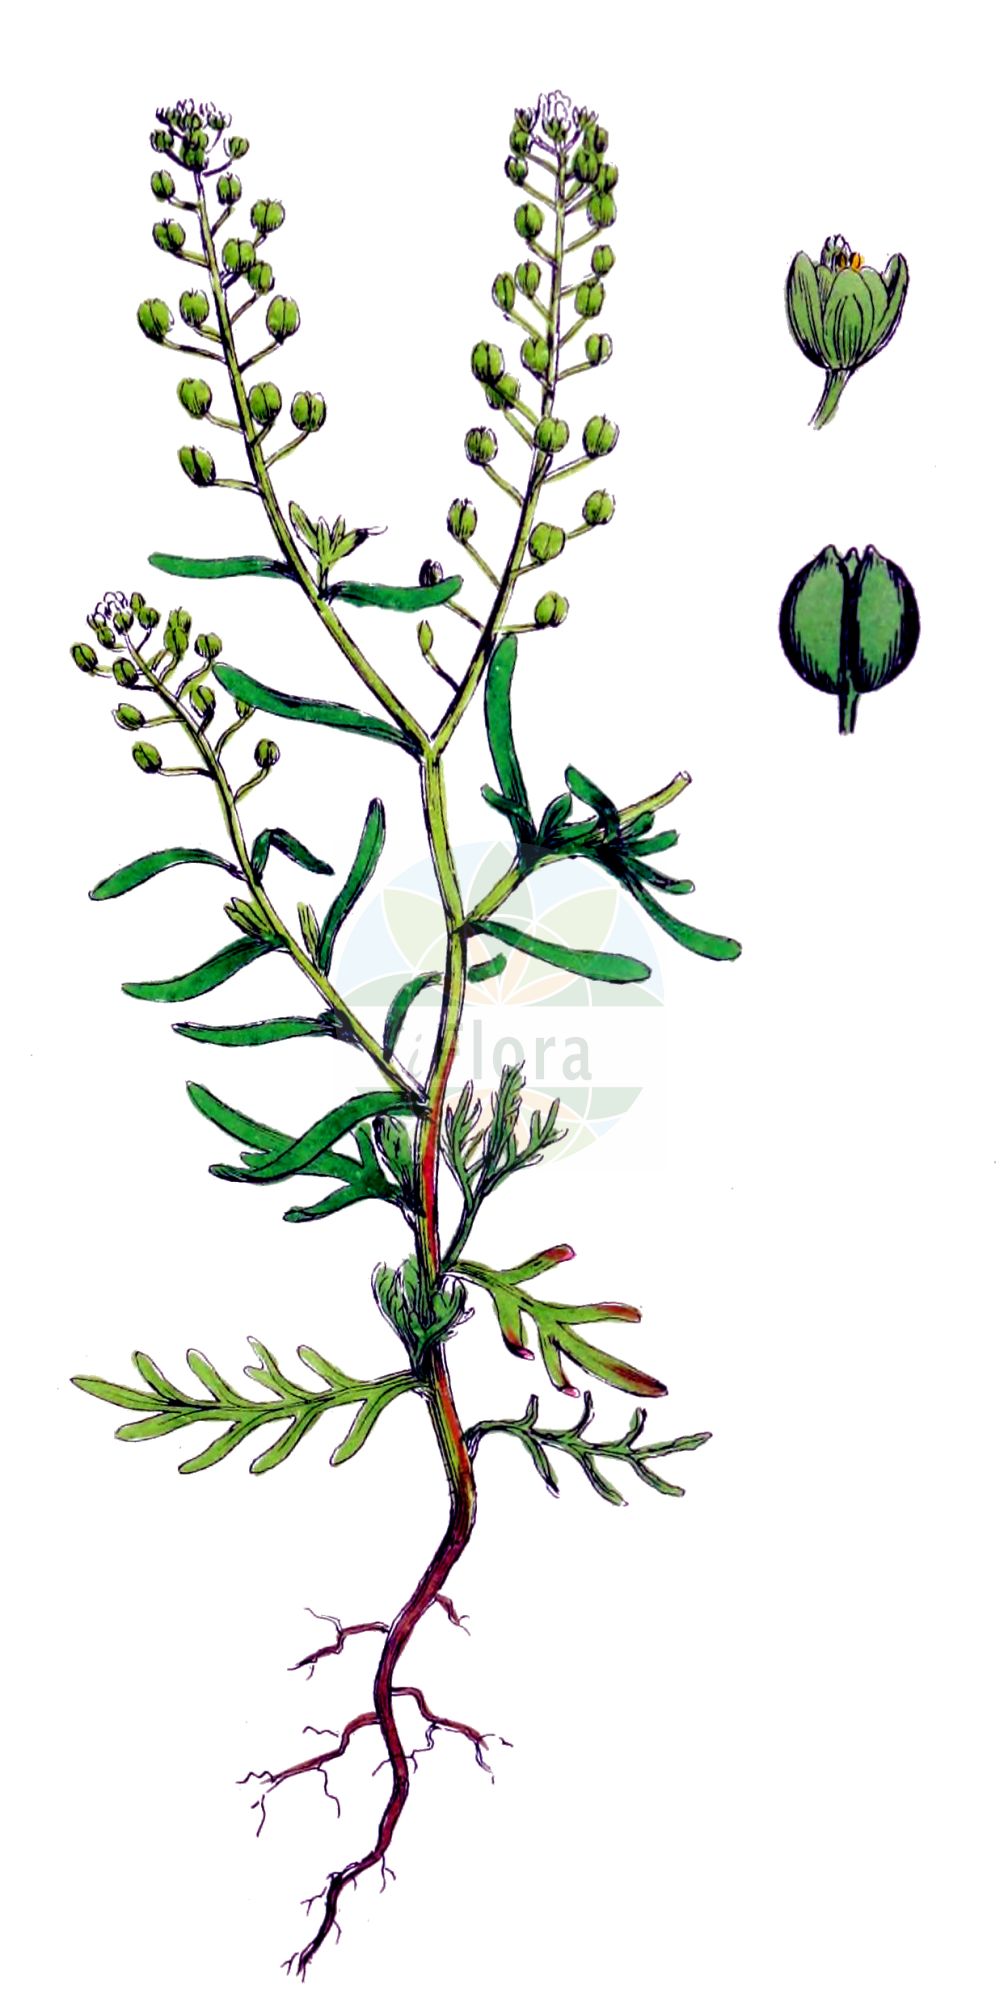 Historische Abbildung von Lepidium ruderale (Schutt-Kresse - Narrow-leaved Pepperwort). Das Bild zeigt Blatt, Bluete, Frucht und Same. ---- Historical Drawing of Lepidium ruderale (Schutt-Kresse - Narrow-leaved Pepperwort). The image is showing leaf, flower, fruit and seed.(Lepidium ruderale,Schutt-Kresse,Narrow-leaved Pepperwort,Lepidium ambiguum,Lepidium ruderale,Schutt-Kresse,Weg-Kresse,Narrow-leaved Pepperwort,Narrow-leaf Pepperweed,Roadside Pepperweed,Narrow-leaved Cress,Peppercress,Rubbish Pepperwort,Lepidium,Kresse,Pepperweed,Brassicaceae,Kreuzblütler,Cabbage family,Blatt,Bluete,Frucht,Same,leaf,flower,fruit,seed,Sowerby (1790-1813))